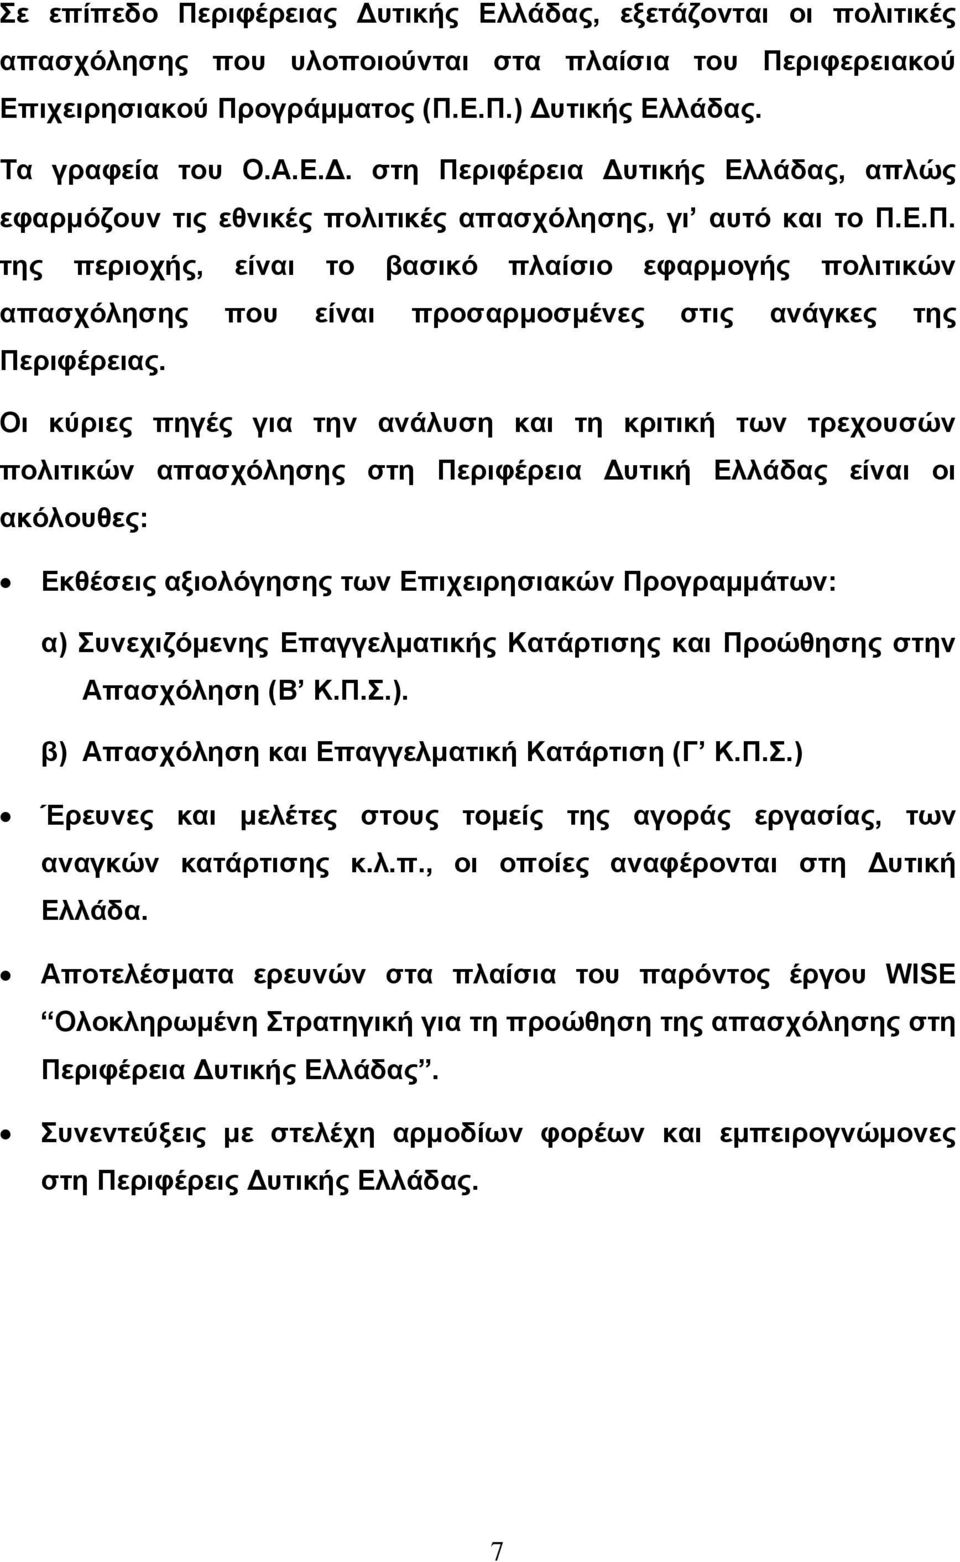 Οι κύριες πηγές για την ανάλυση και τη κριτική των τρεχουσών πολιτικών απασχόλησης στη Περιφέρεια υτική Ελλάδας είναι οι ακόλουθες: Εκθέσεις αξιολόγησης των Επιχειρησιακών Προγραµµάτων: α)